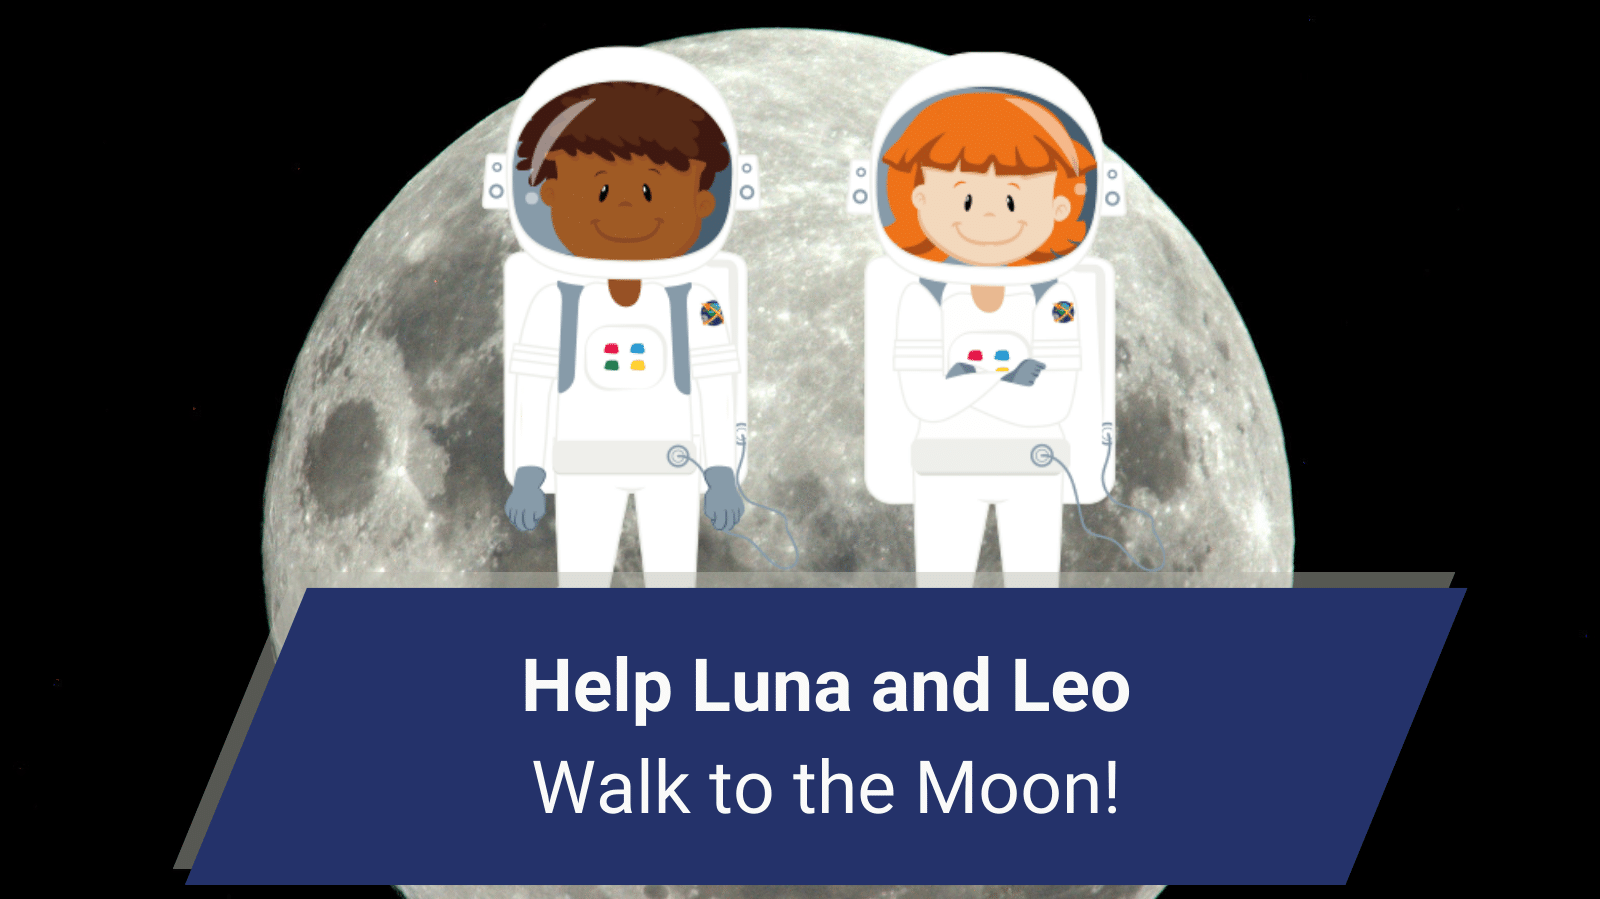 Hilf Luna und Leo auf ihrem Weg zum Mond!